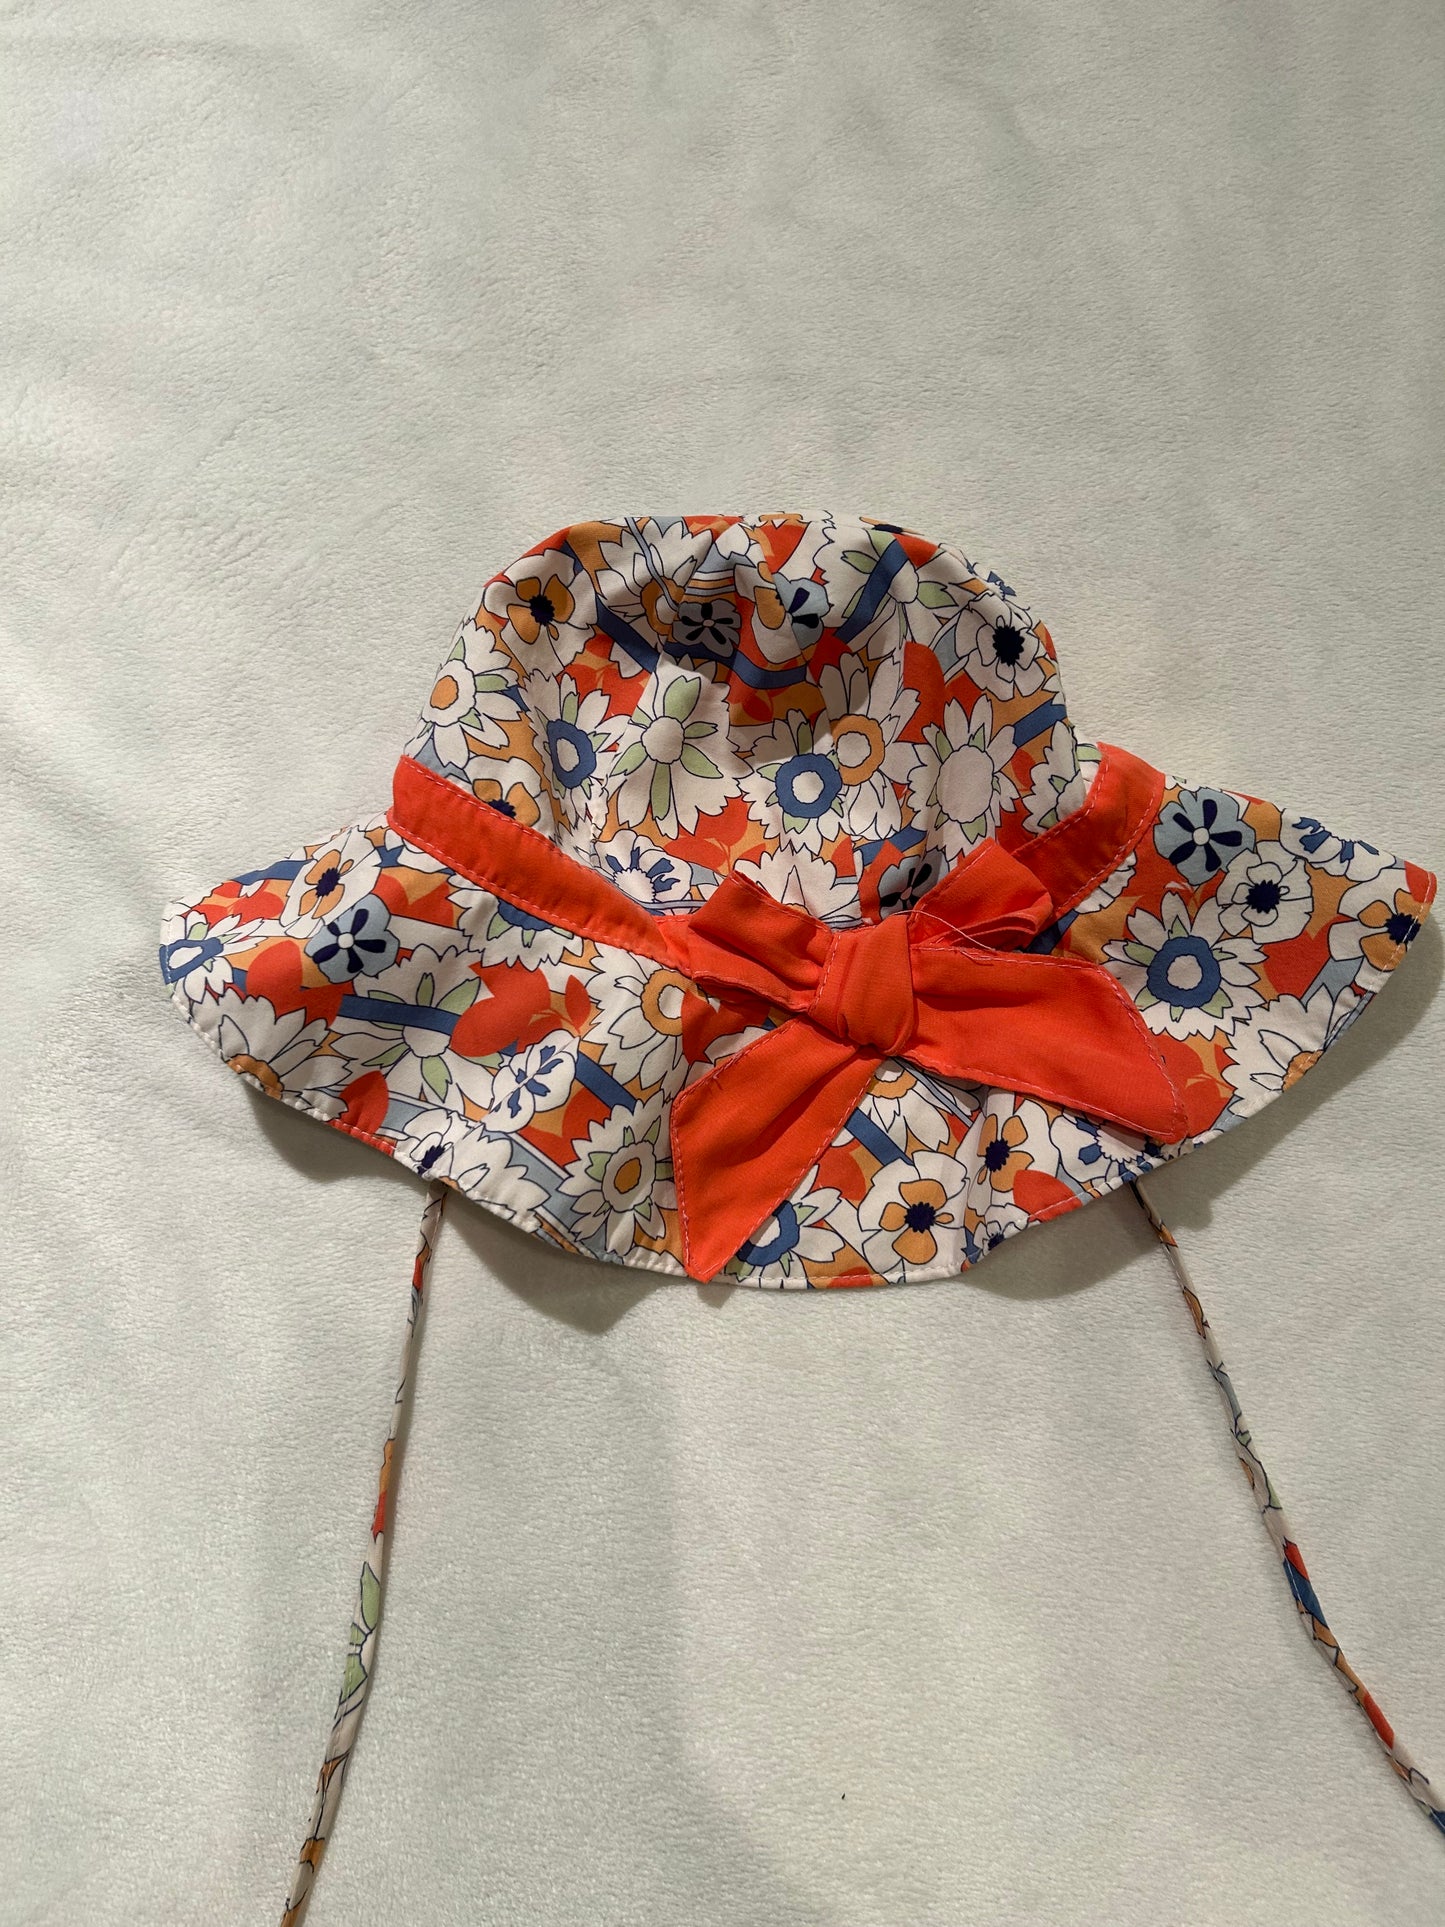 Girls beach hat - size 48 (12-18 months) UVA/UVB - orange with flowers